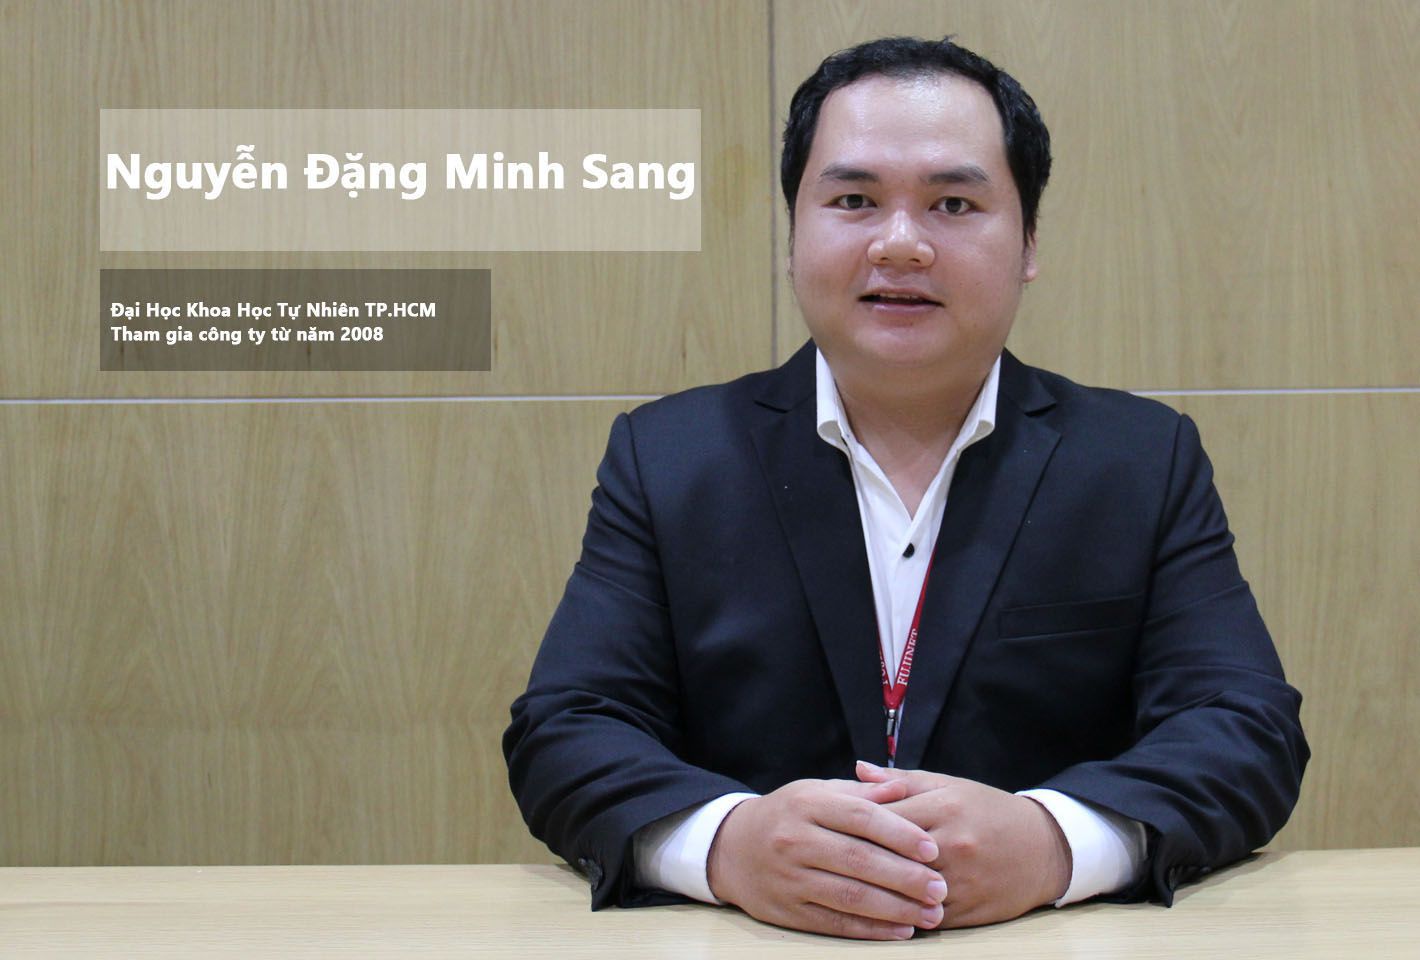 Chị Nguyễn Thị Thúy Nhung cựu sinh viên trường Đại Học Khoa Học Xã Hội và Nhân Văn TPHCM.